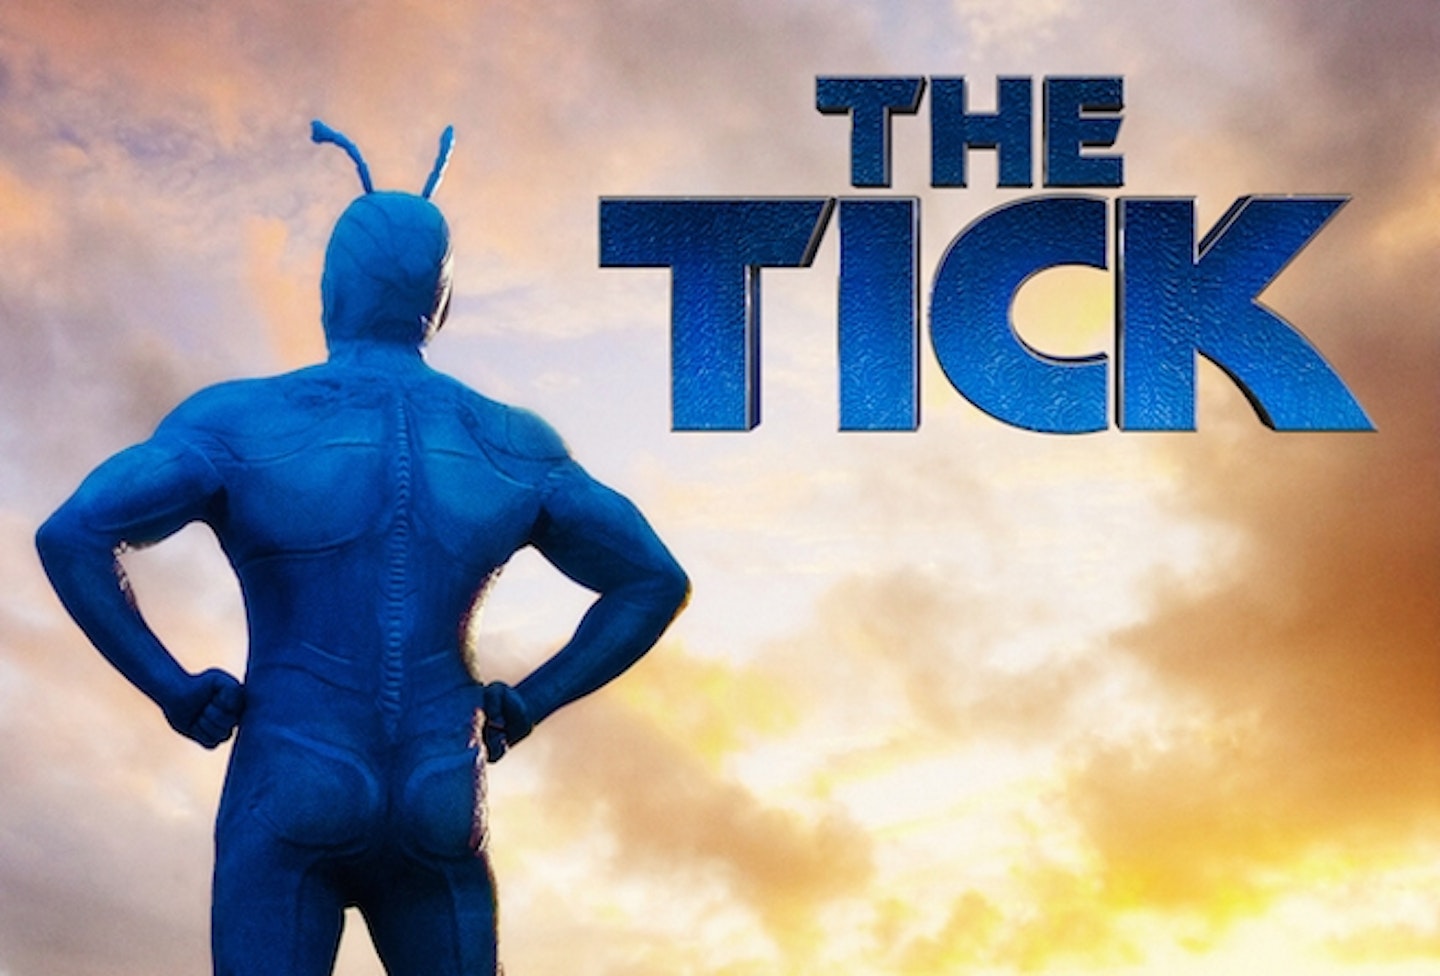 The Tick (Amazon series) logo